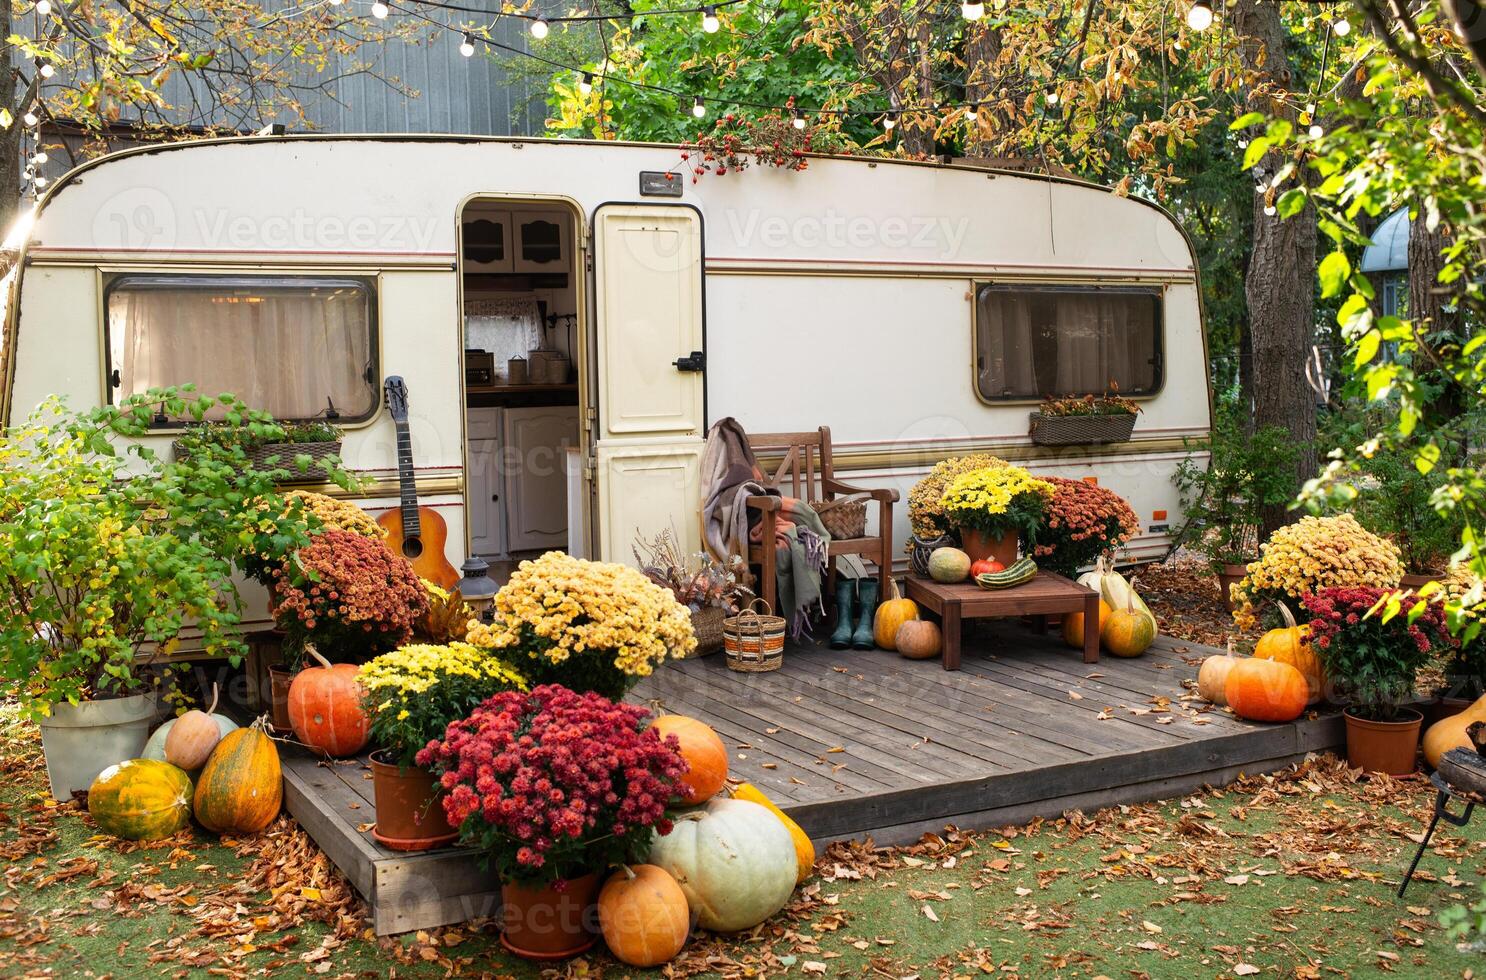 mobile Accueil van avec terrasse dans l'automne, mobile maison, Orange déchue feuilles. l'automne décor, citrouilles photo